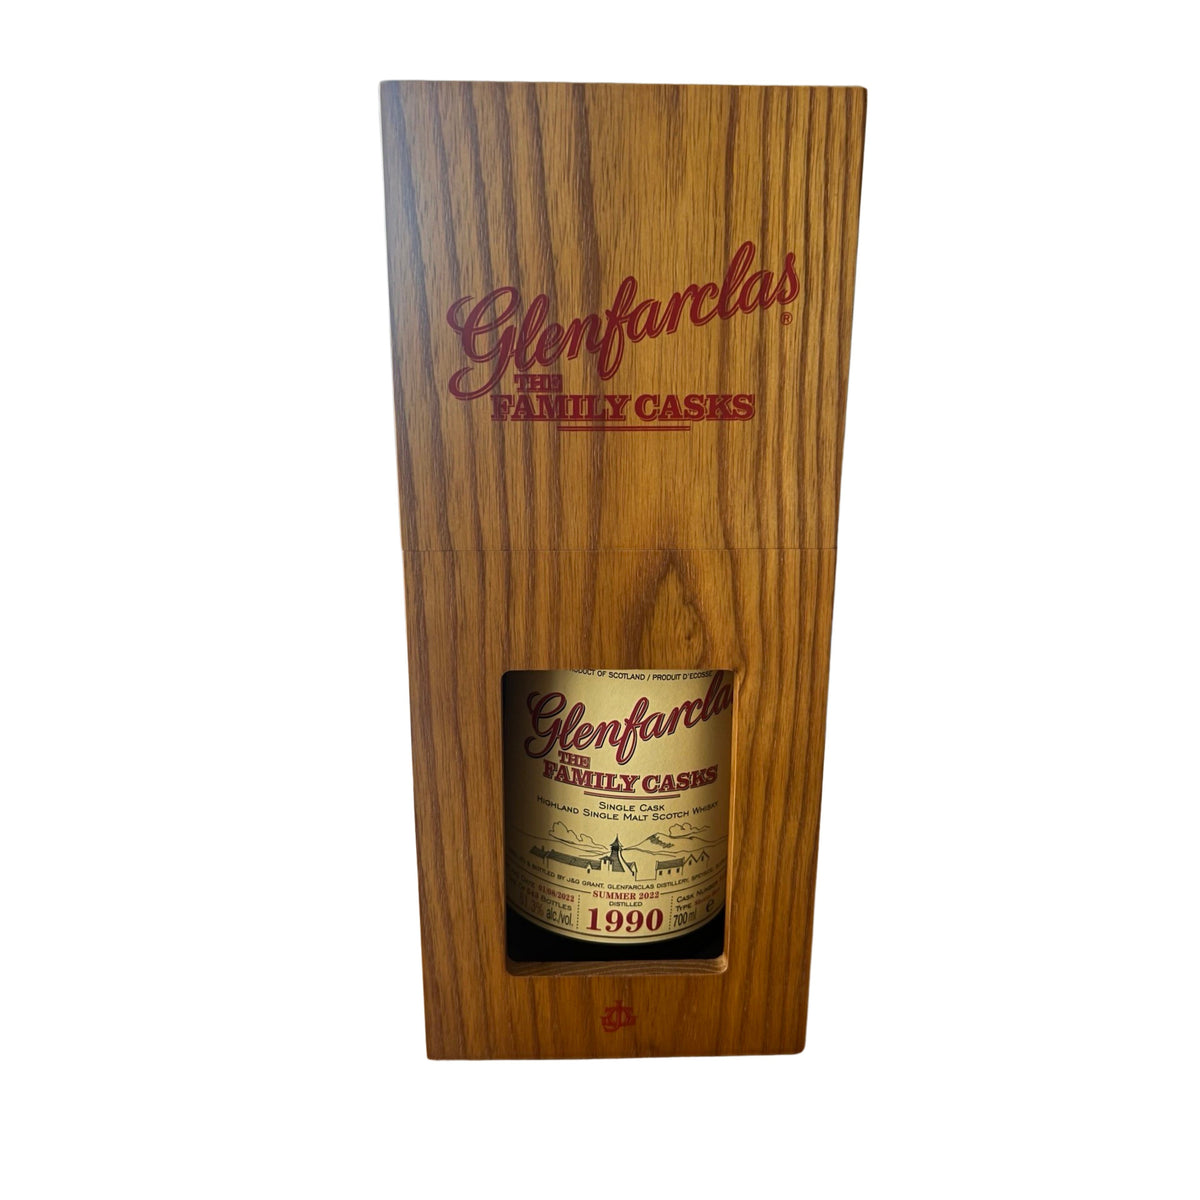 1990 Glenfarclas 30 year Old The Family Casks Cask Strength Single Malt Scotch Whisky 700ml